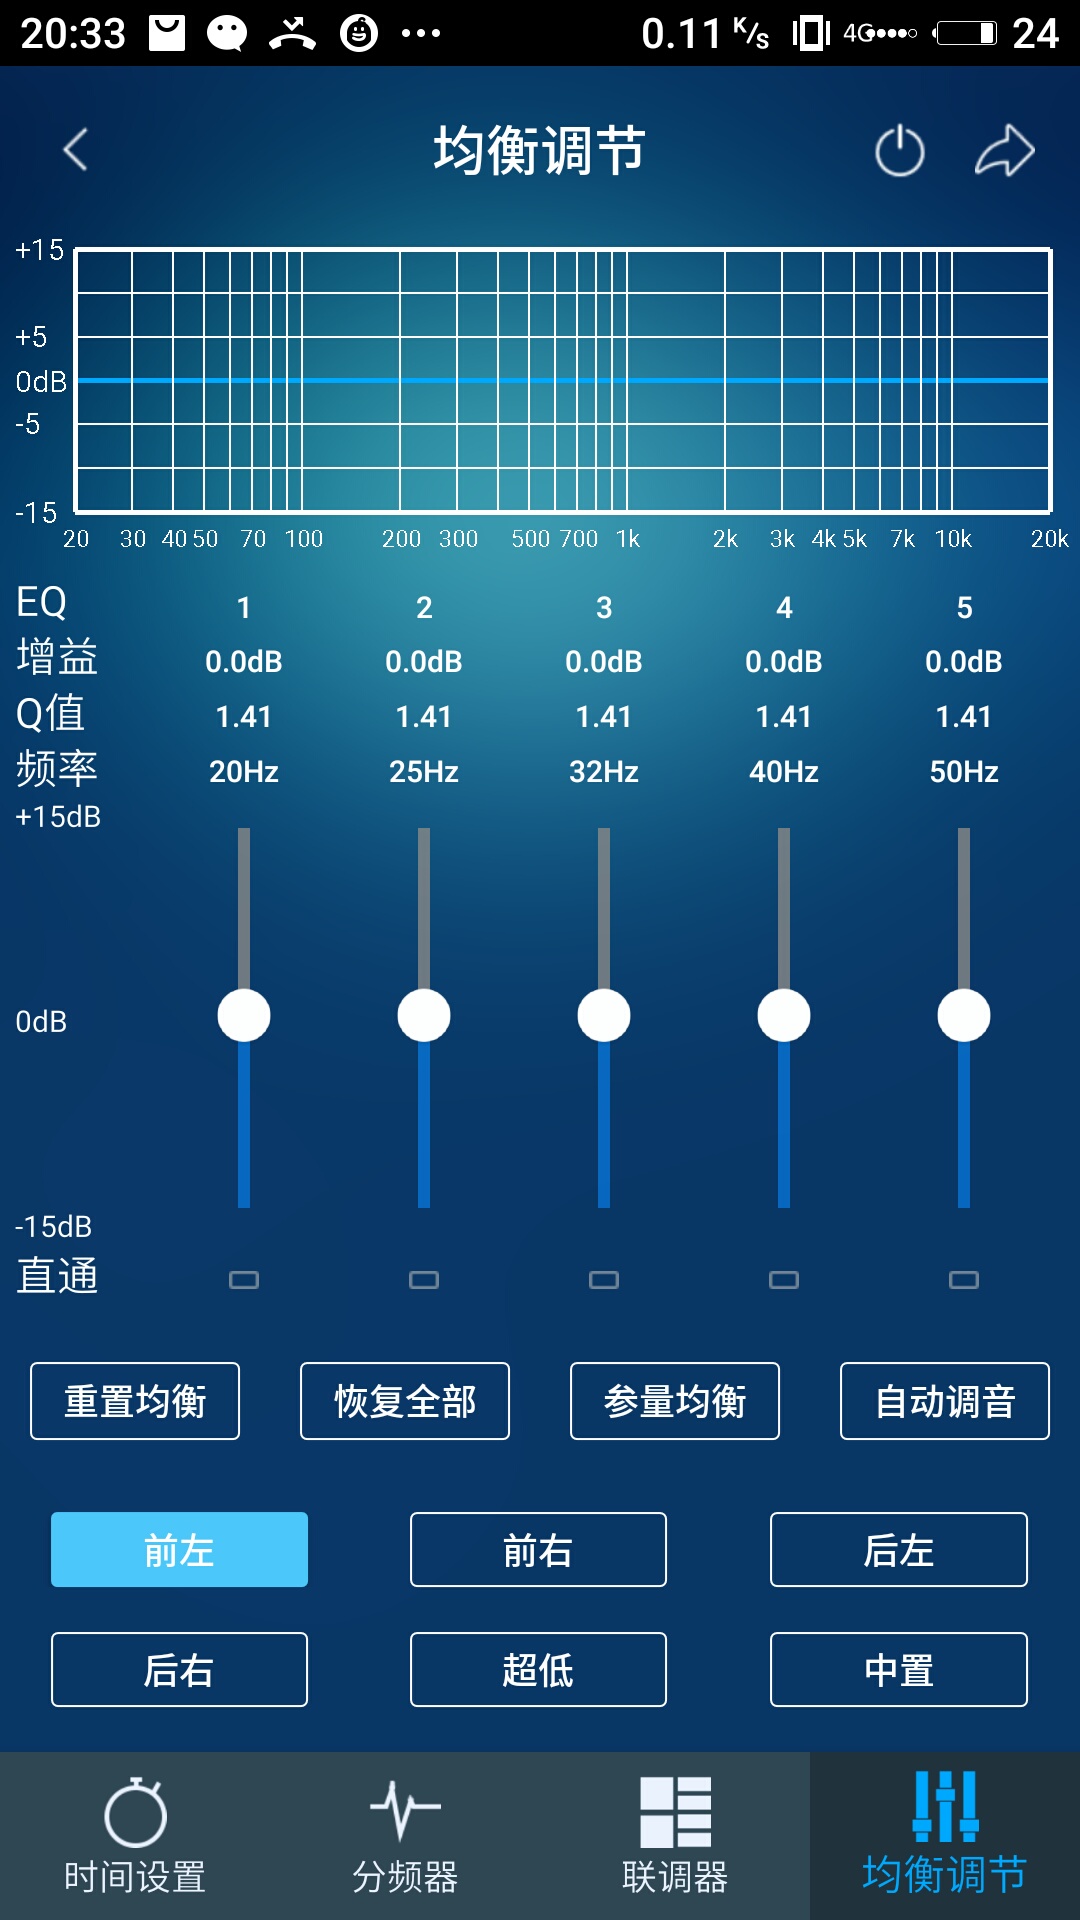 来音调音器app下载-来音调音器v1.0.0 免费版-腾牛安卓网